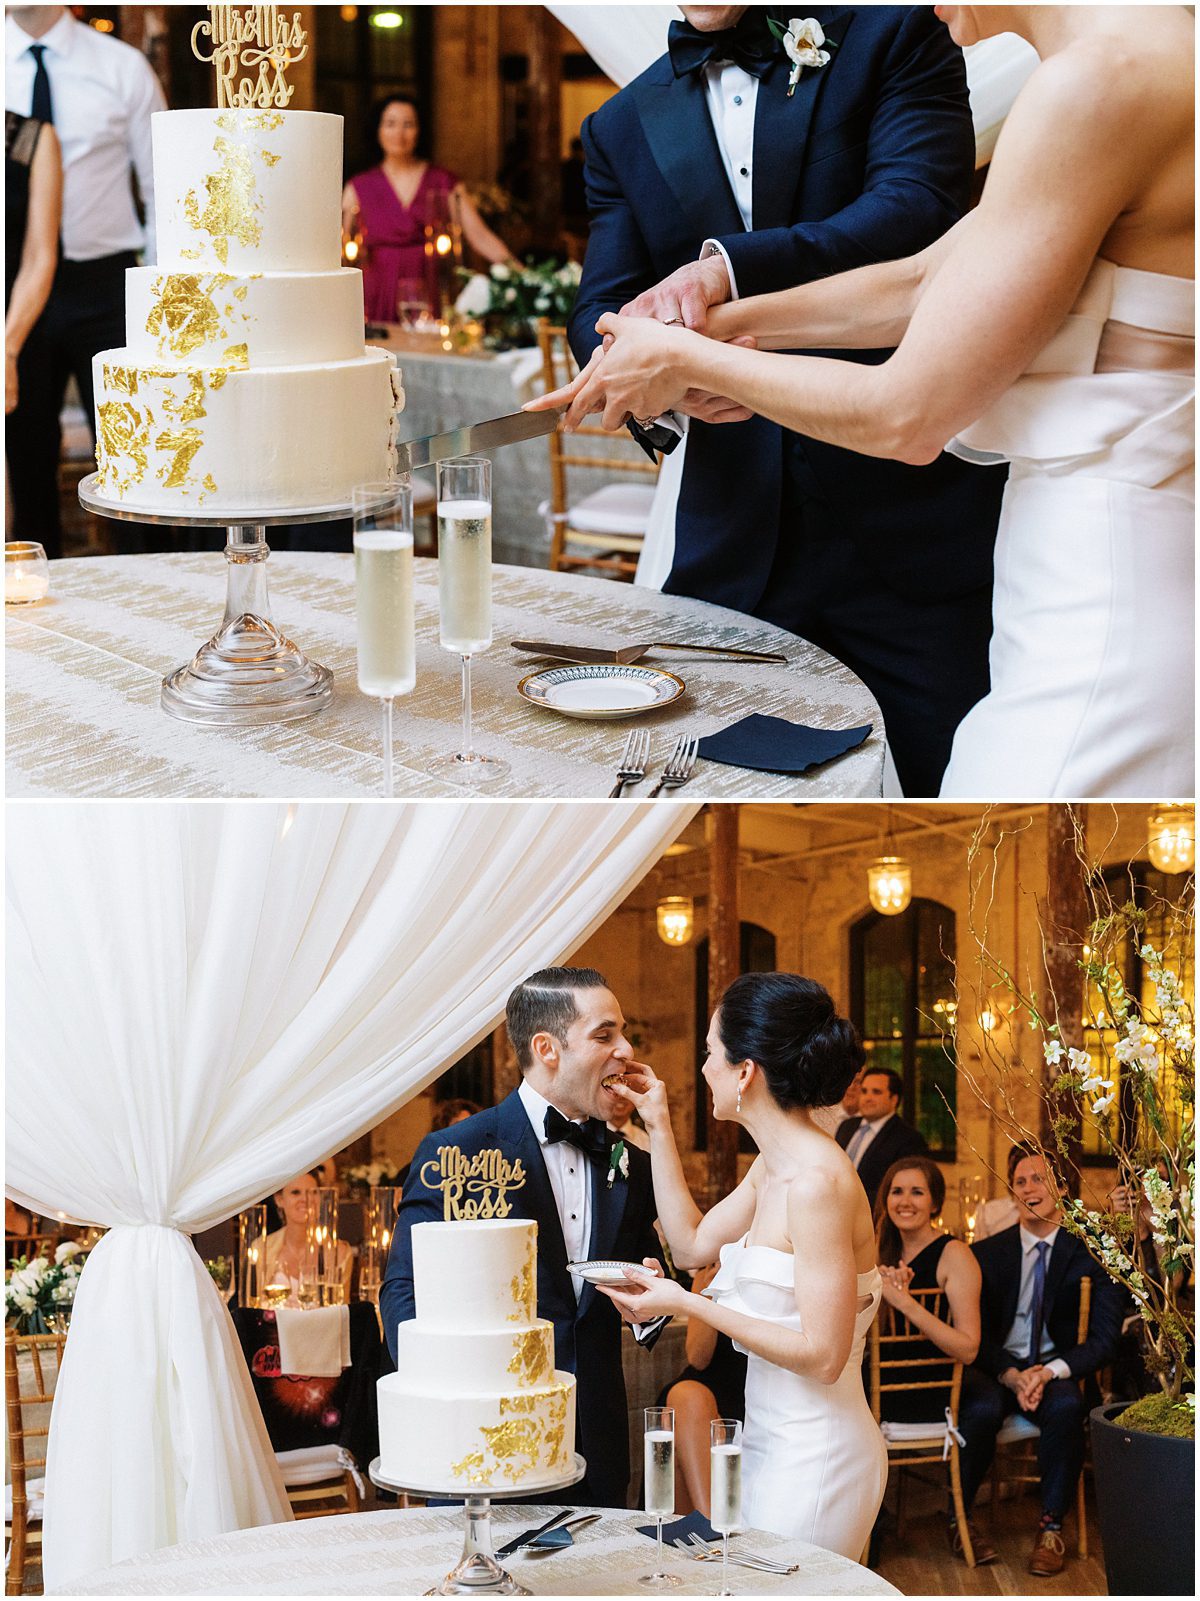 Modern bride and groom cutting their cake at their Cedar Room wedding reception